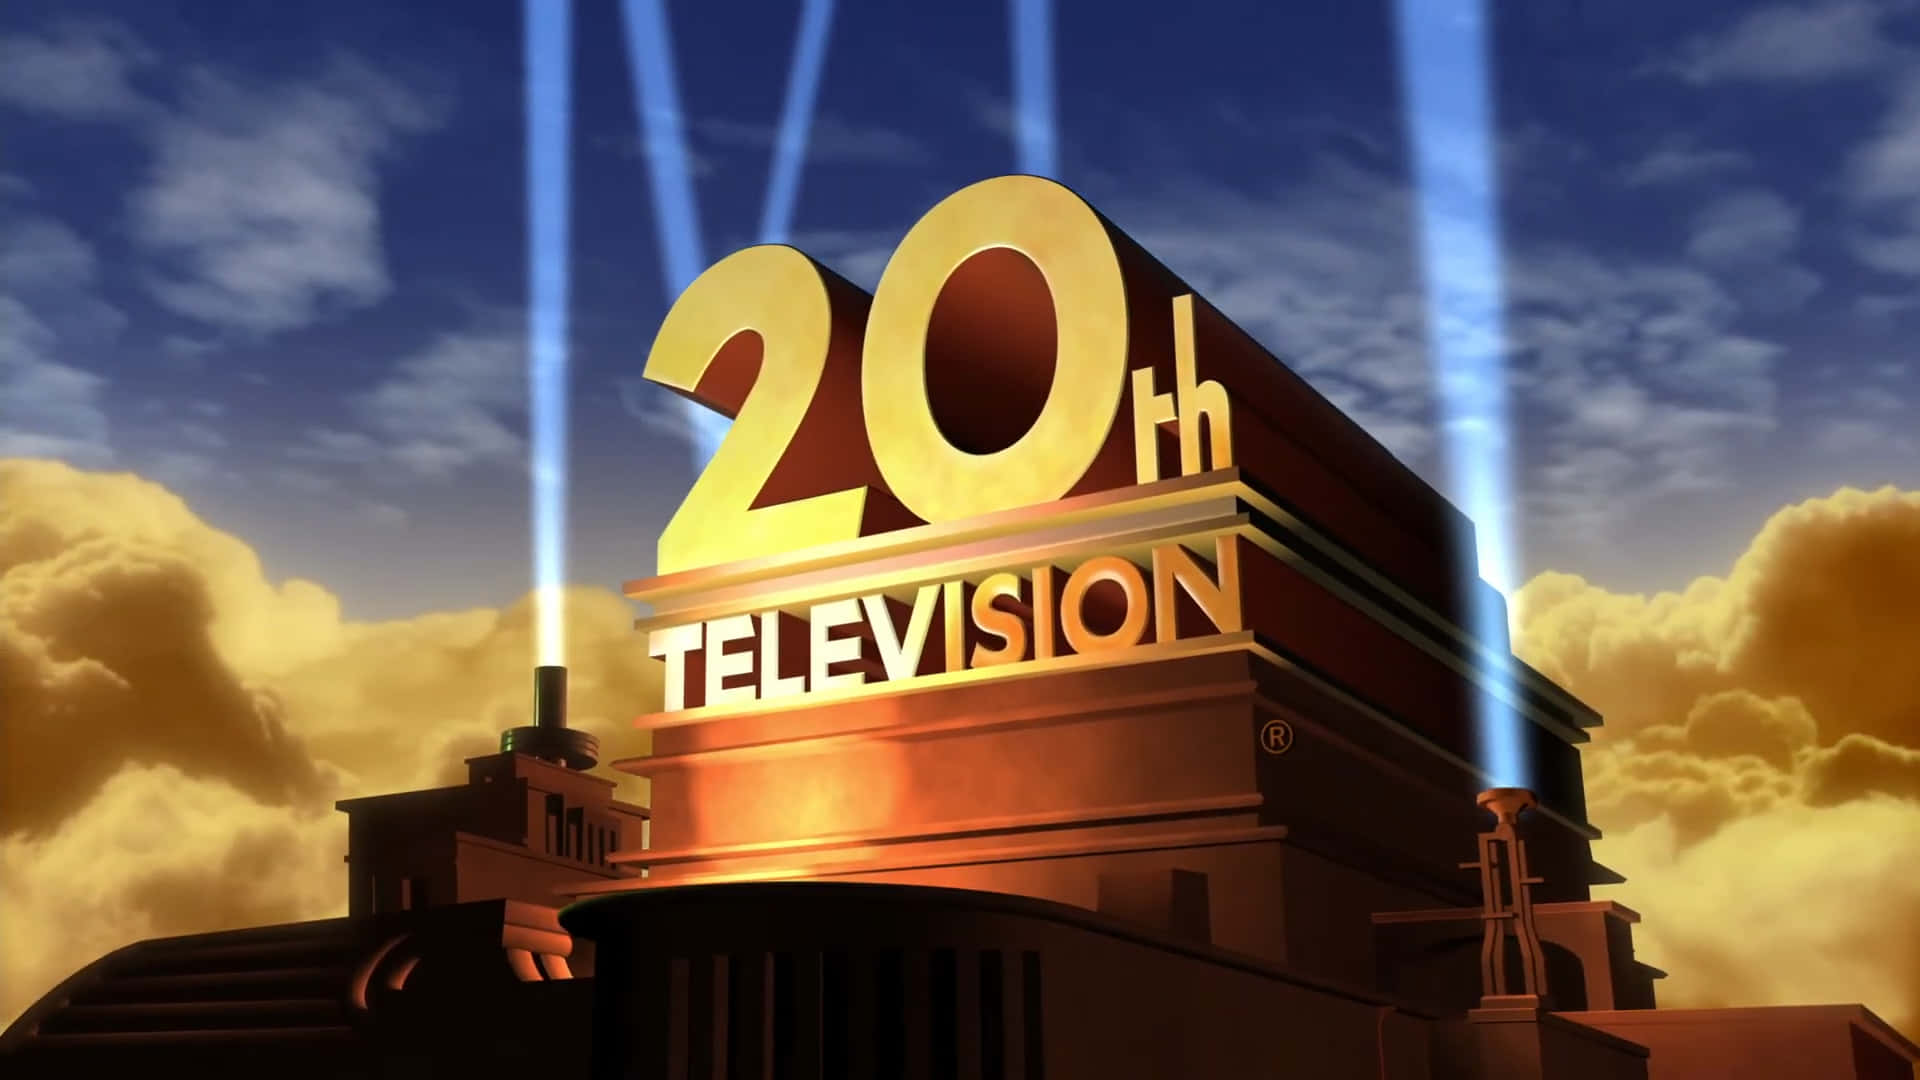 20thtelevision-logo Med En Lys, Der Skinner På Det.